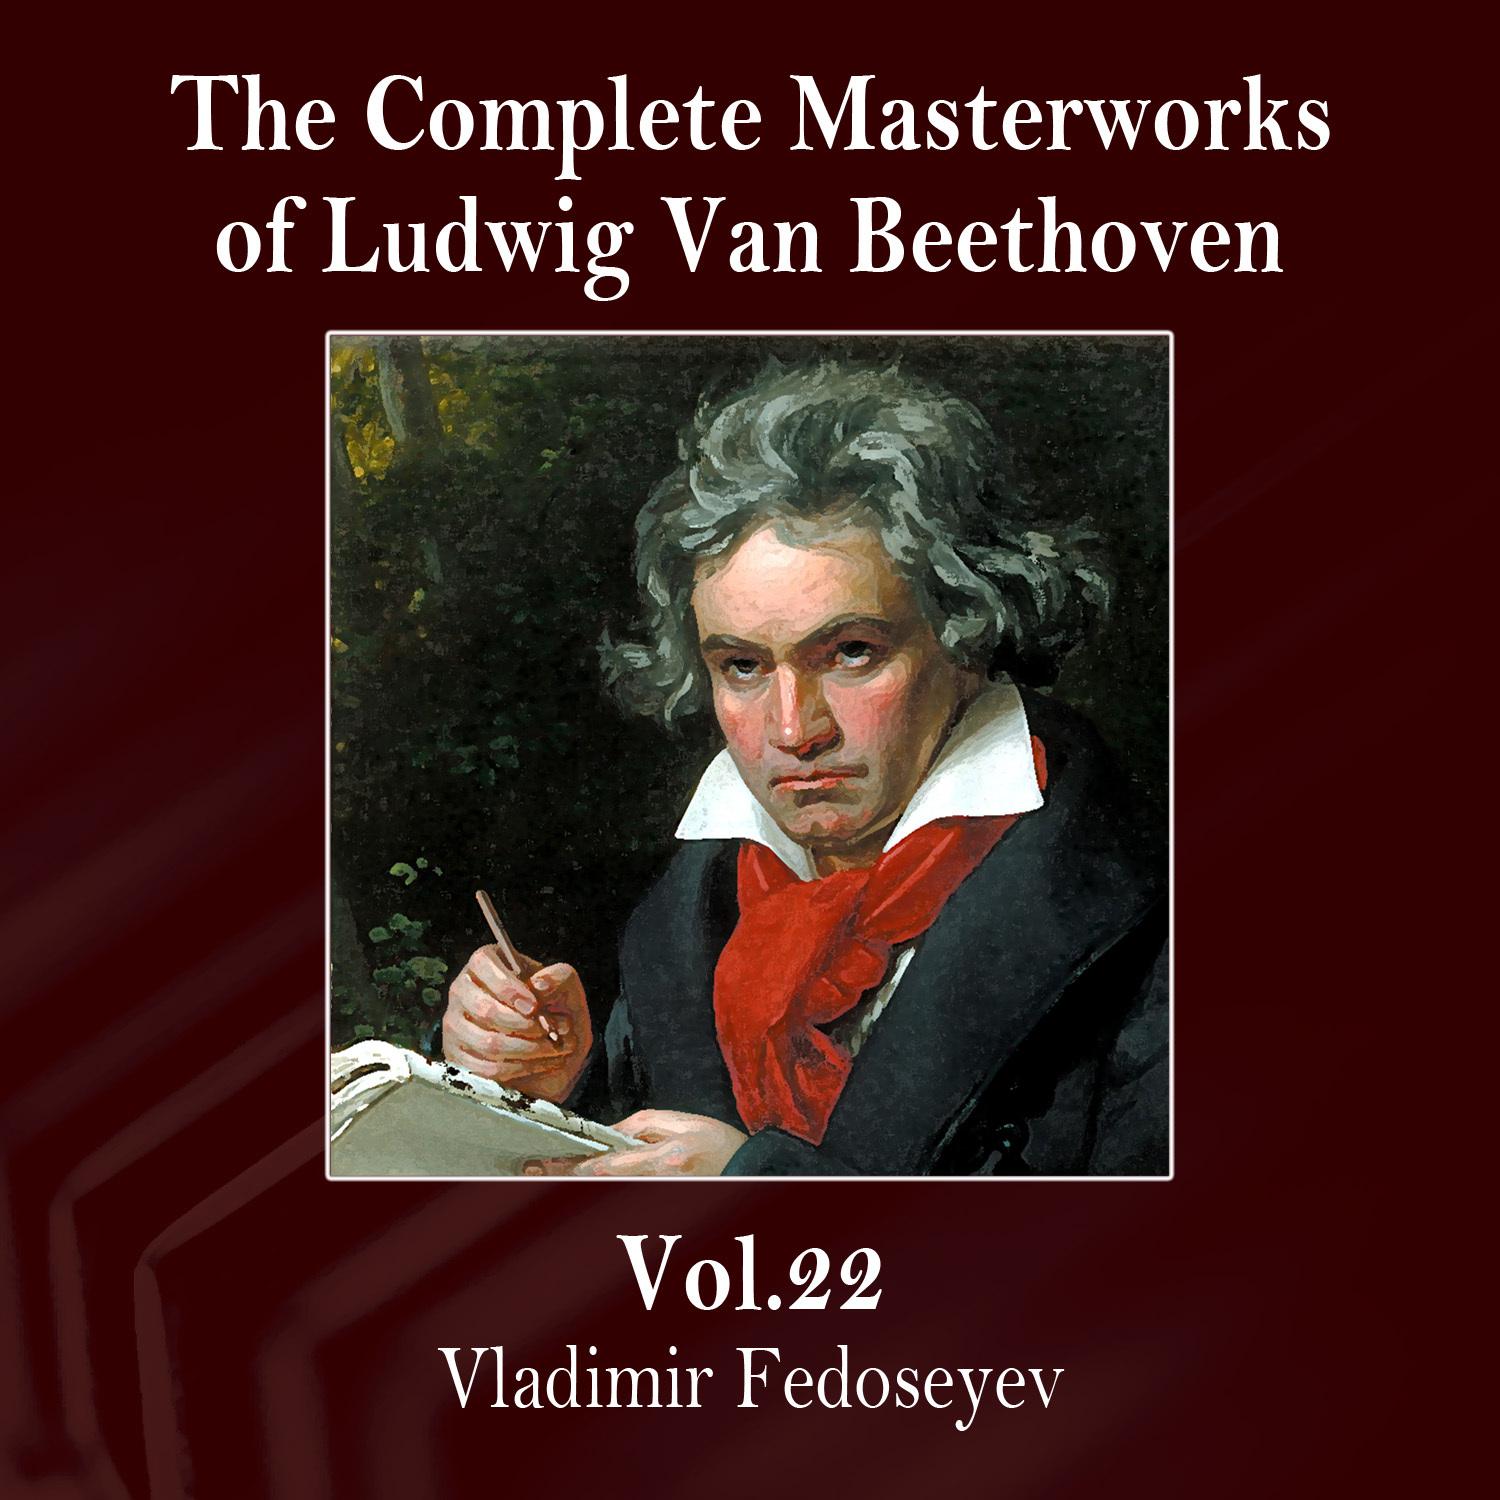 The Complete Masterworks of Ludwig Van Beethoven, Vol. 22